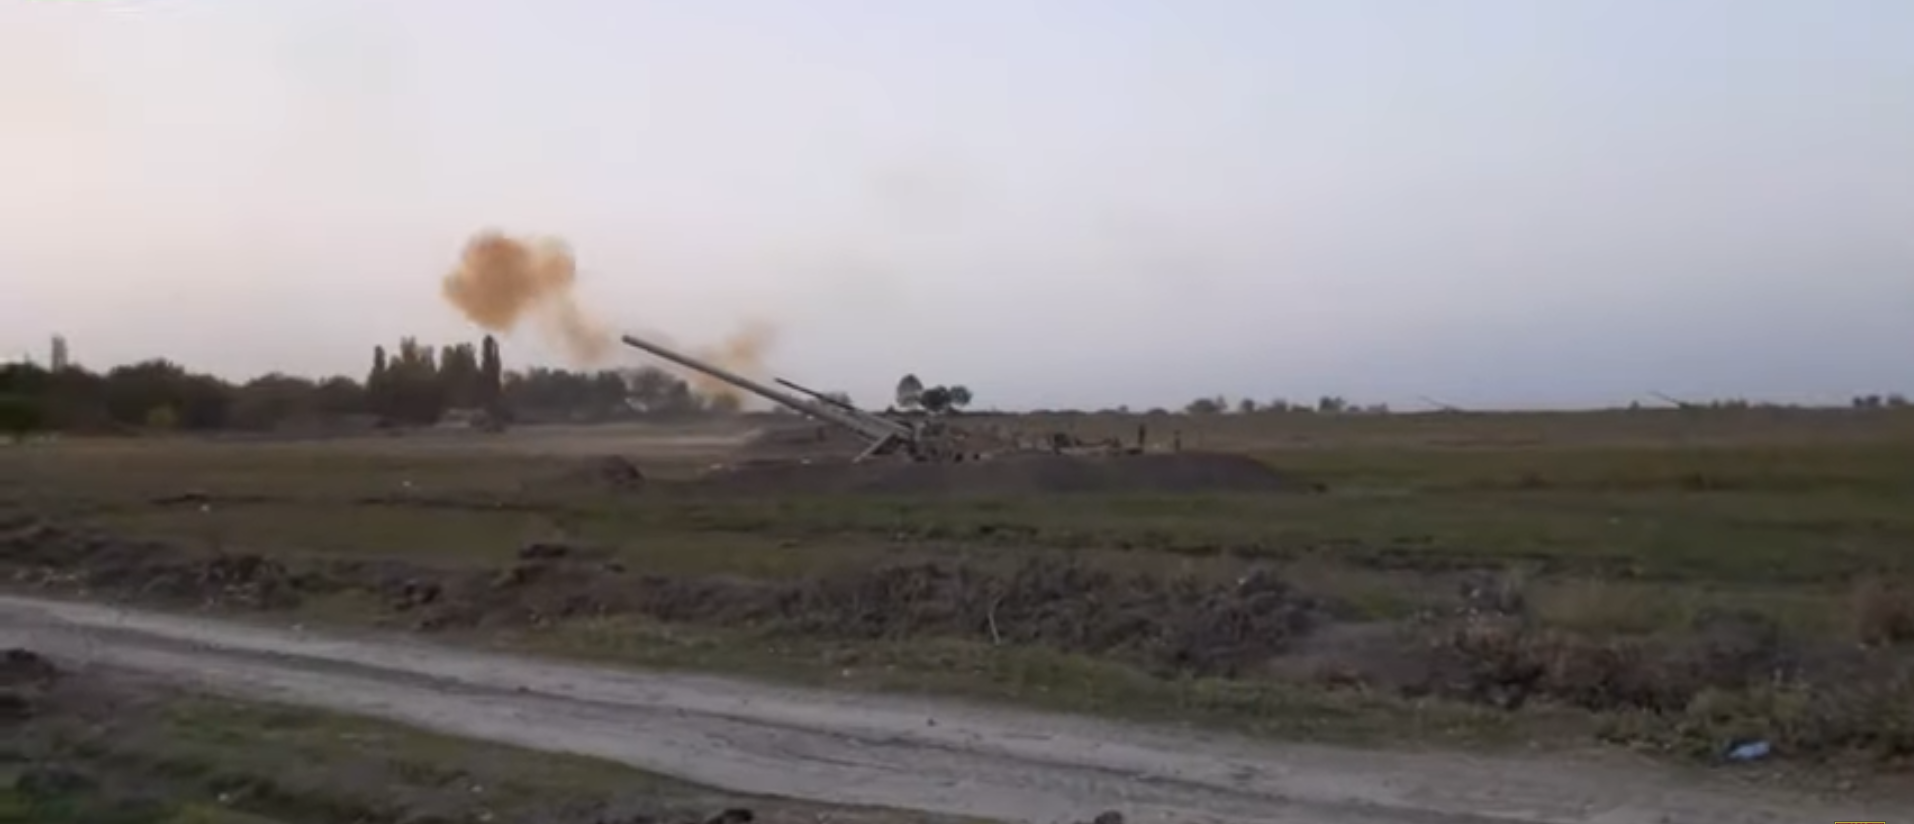 Азербайджан сообщил об артиллерийских ударах по объектам Армении и "НКР" - кадры облетели Сеть